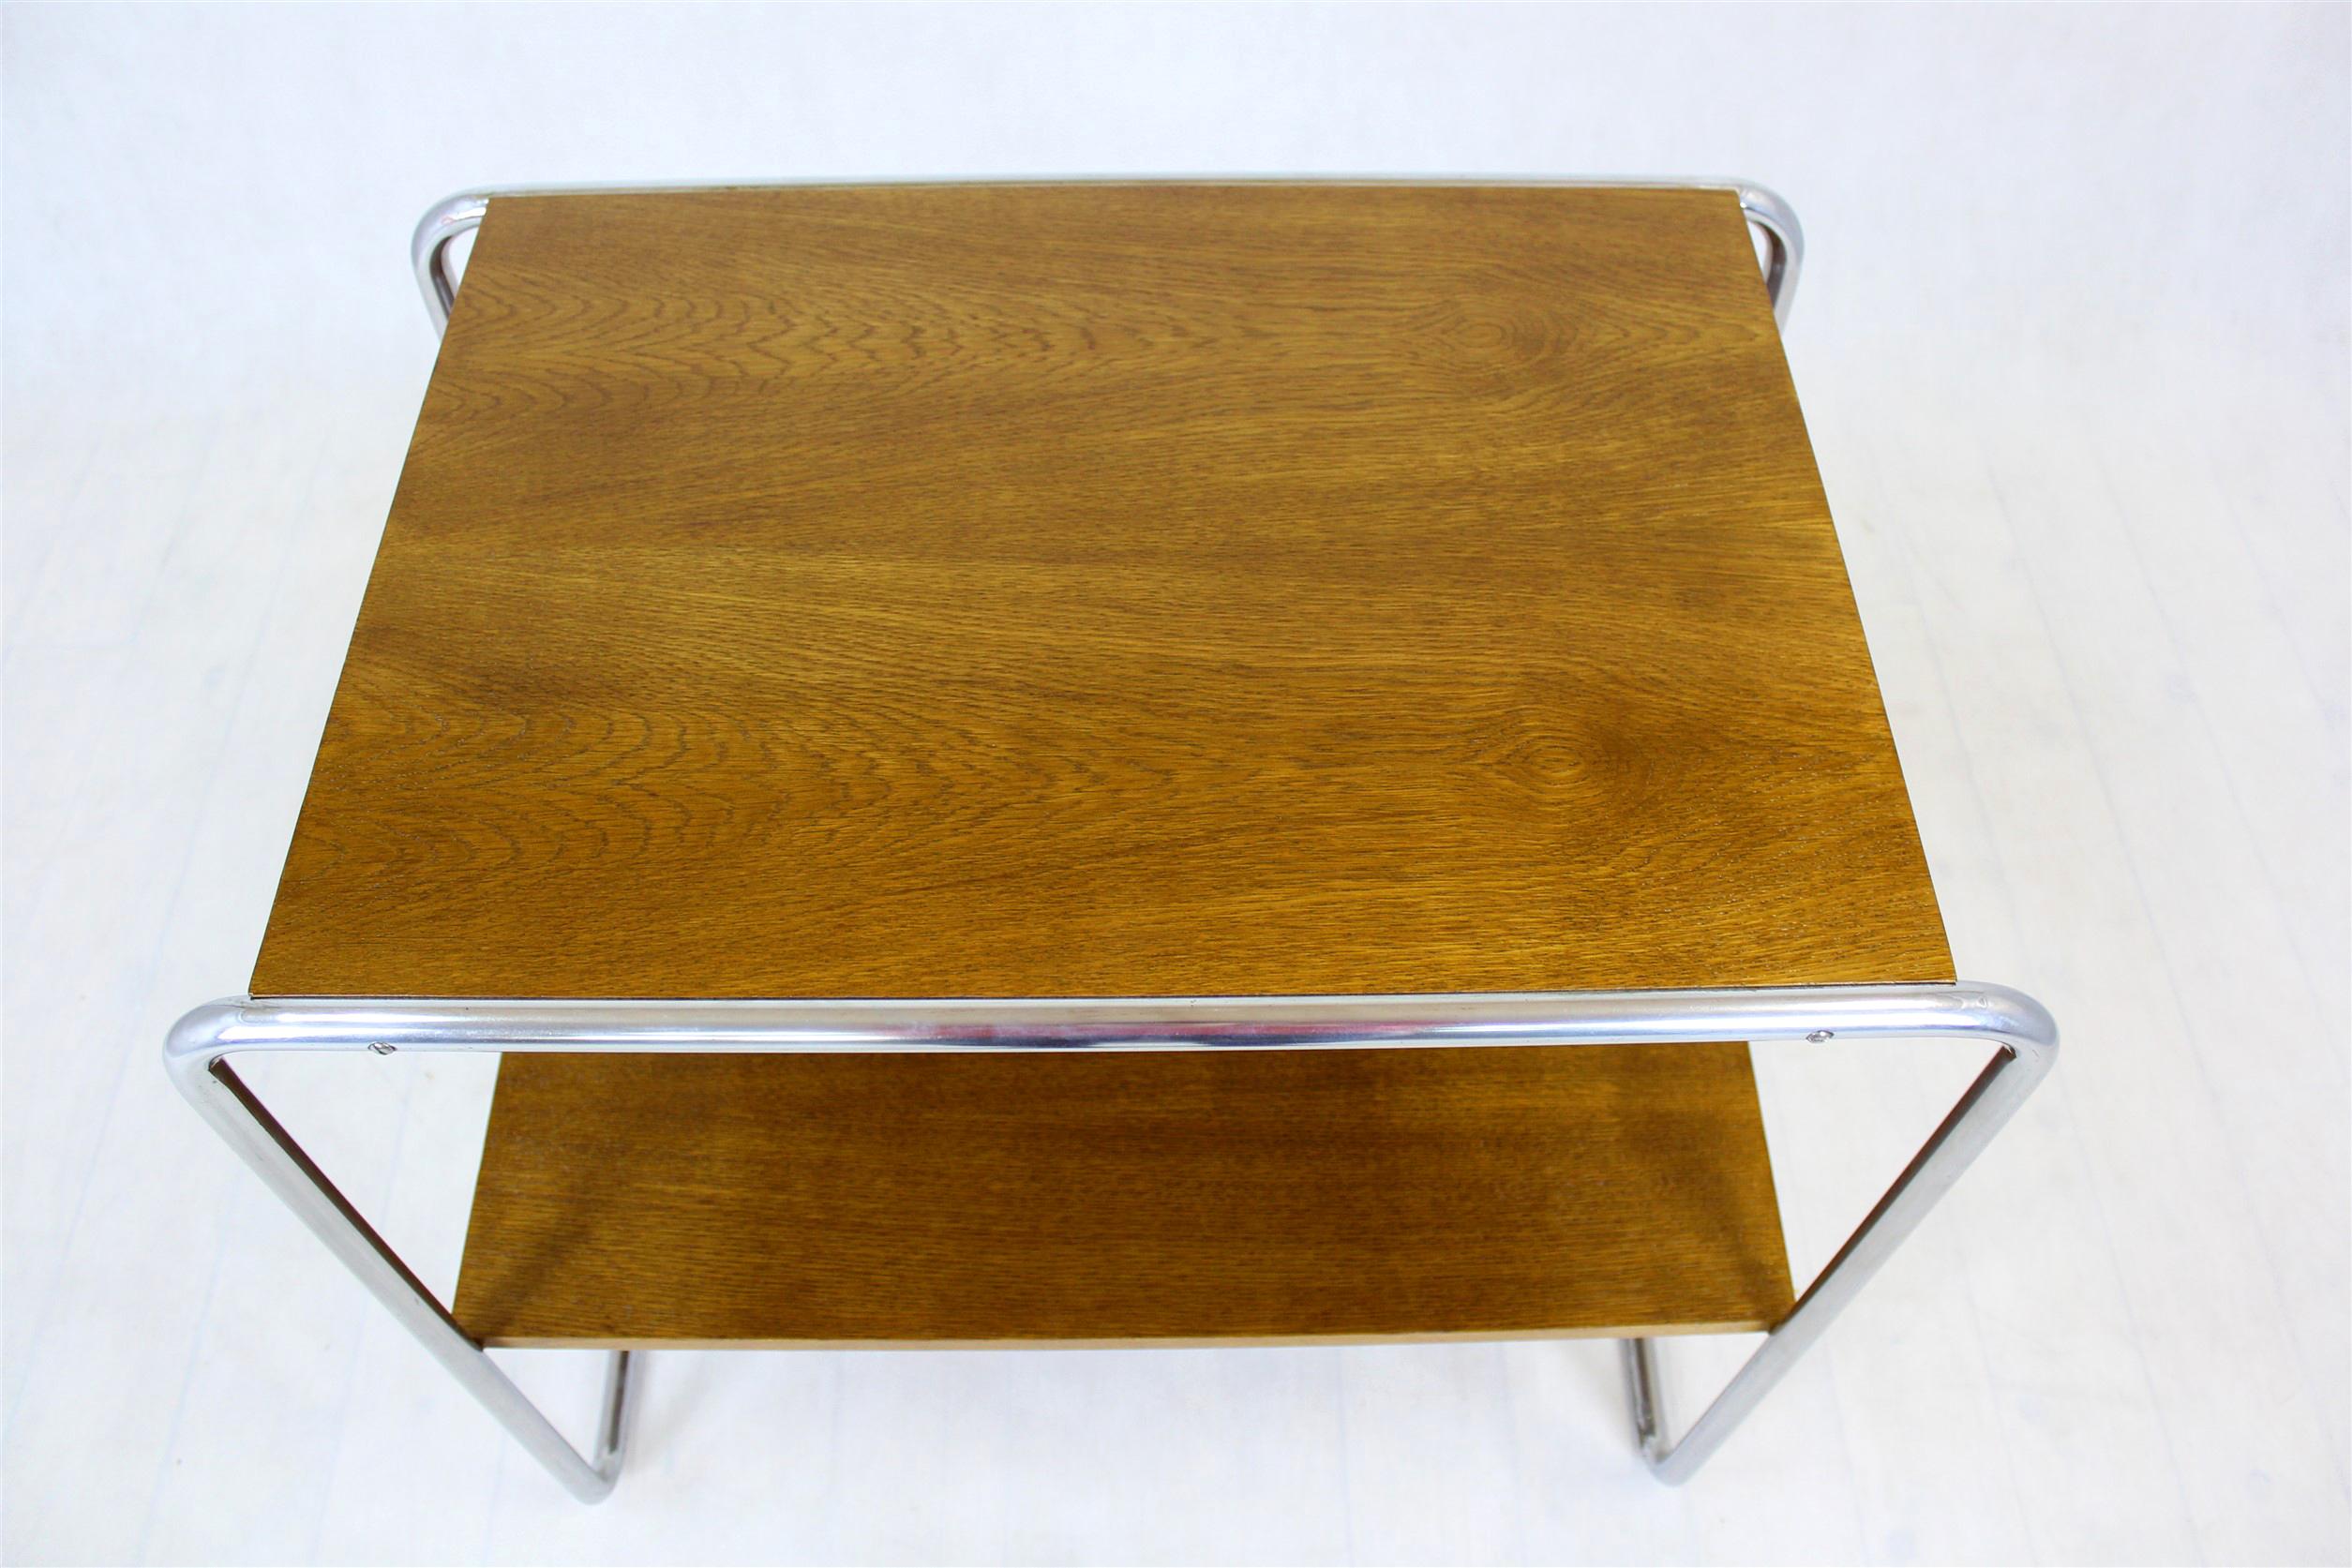 
Cette table console (mod. B12) a été conçue par Marcel Breuer dans les années 1930. Il comporte deux étagères soutenues par un cadre en tube d'acier chromé. Les éléments en bois ont été restaurés, vernis, les chromes sont conservés dans leur bon